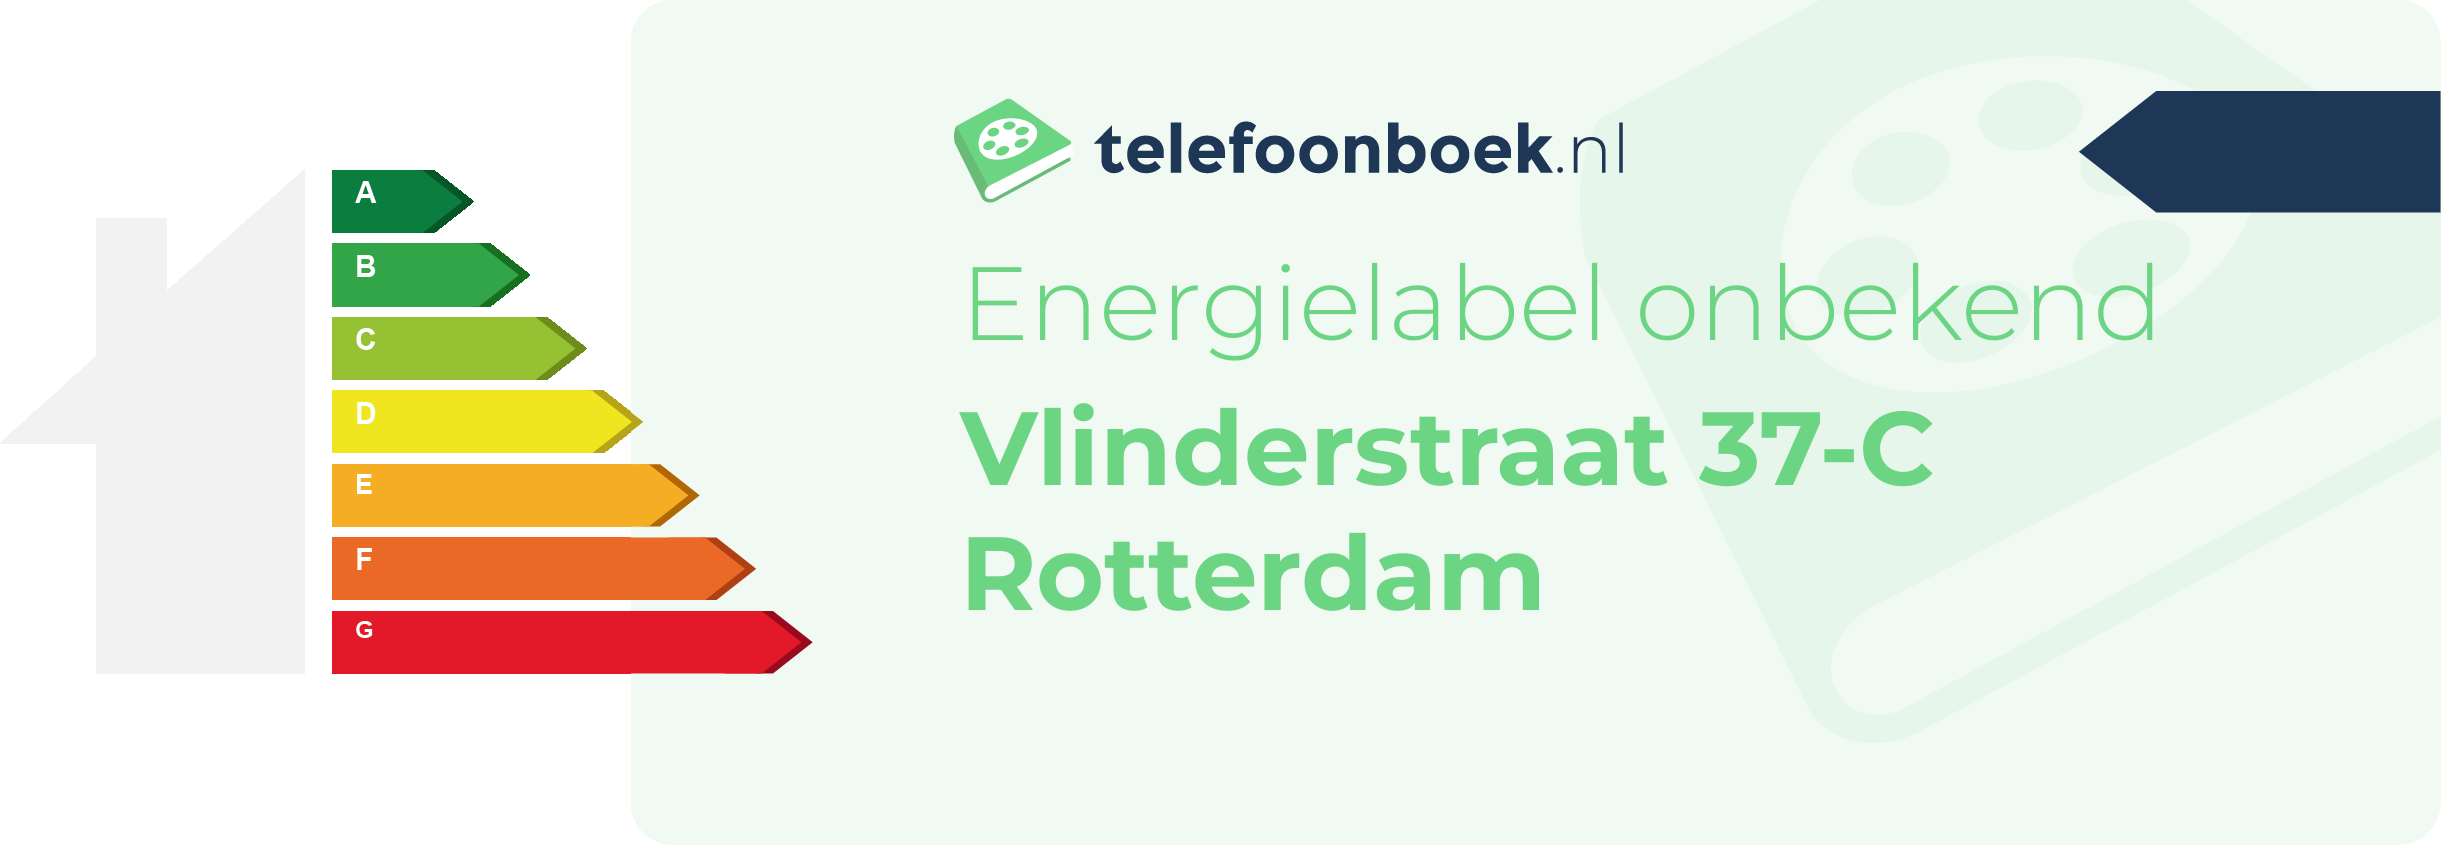 Energielabel Vlinderstraat 37-C Rotterdam